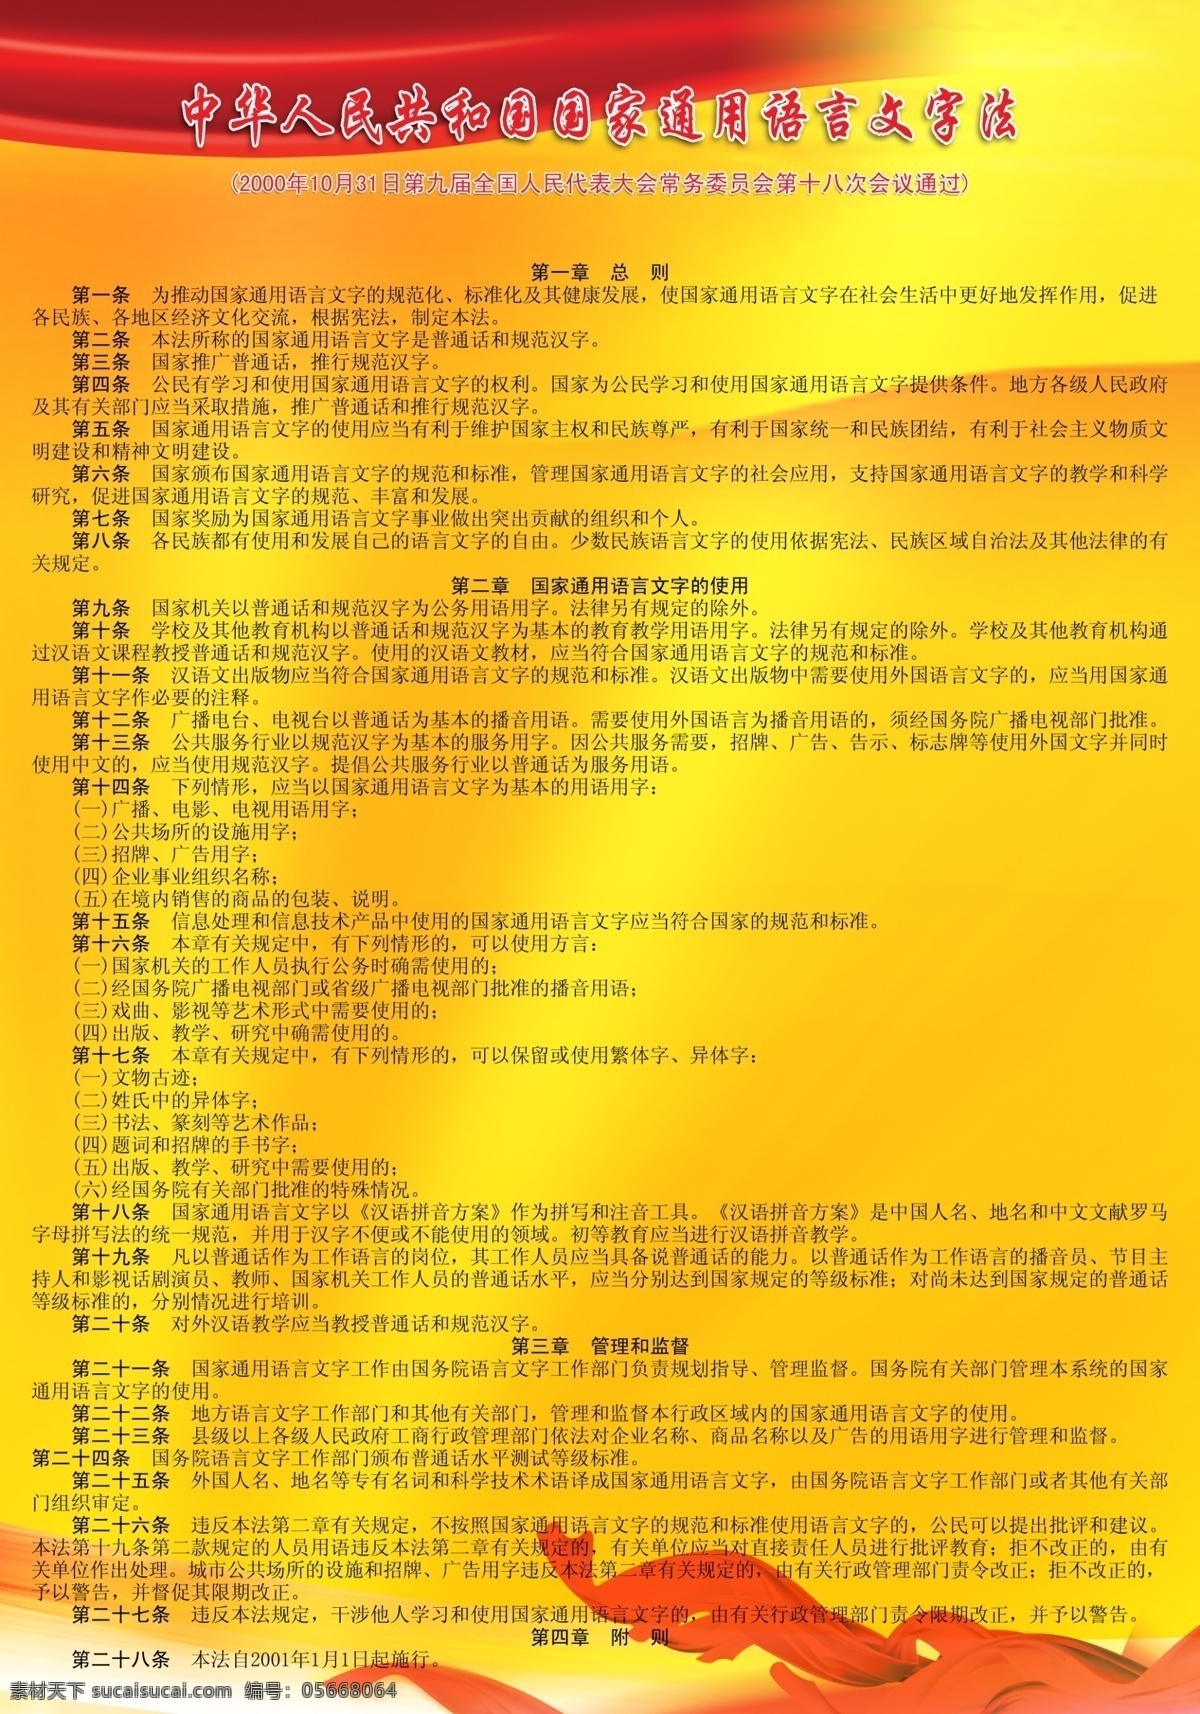 语言文字 法 海报 中华人民共和国 文字法 中华 国家通用语言 国家文字法 展板 广告设计模板 源文件